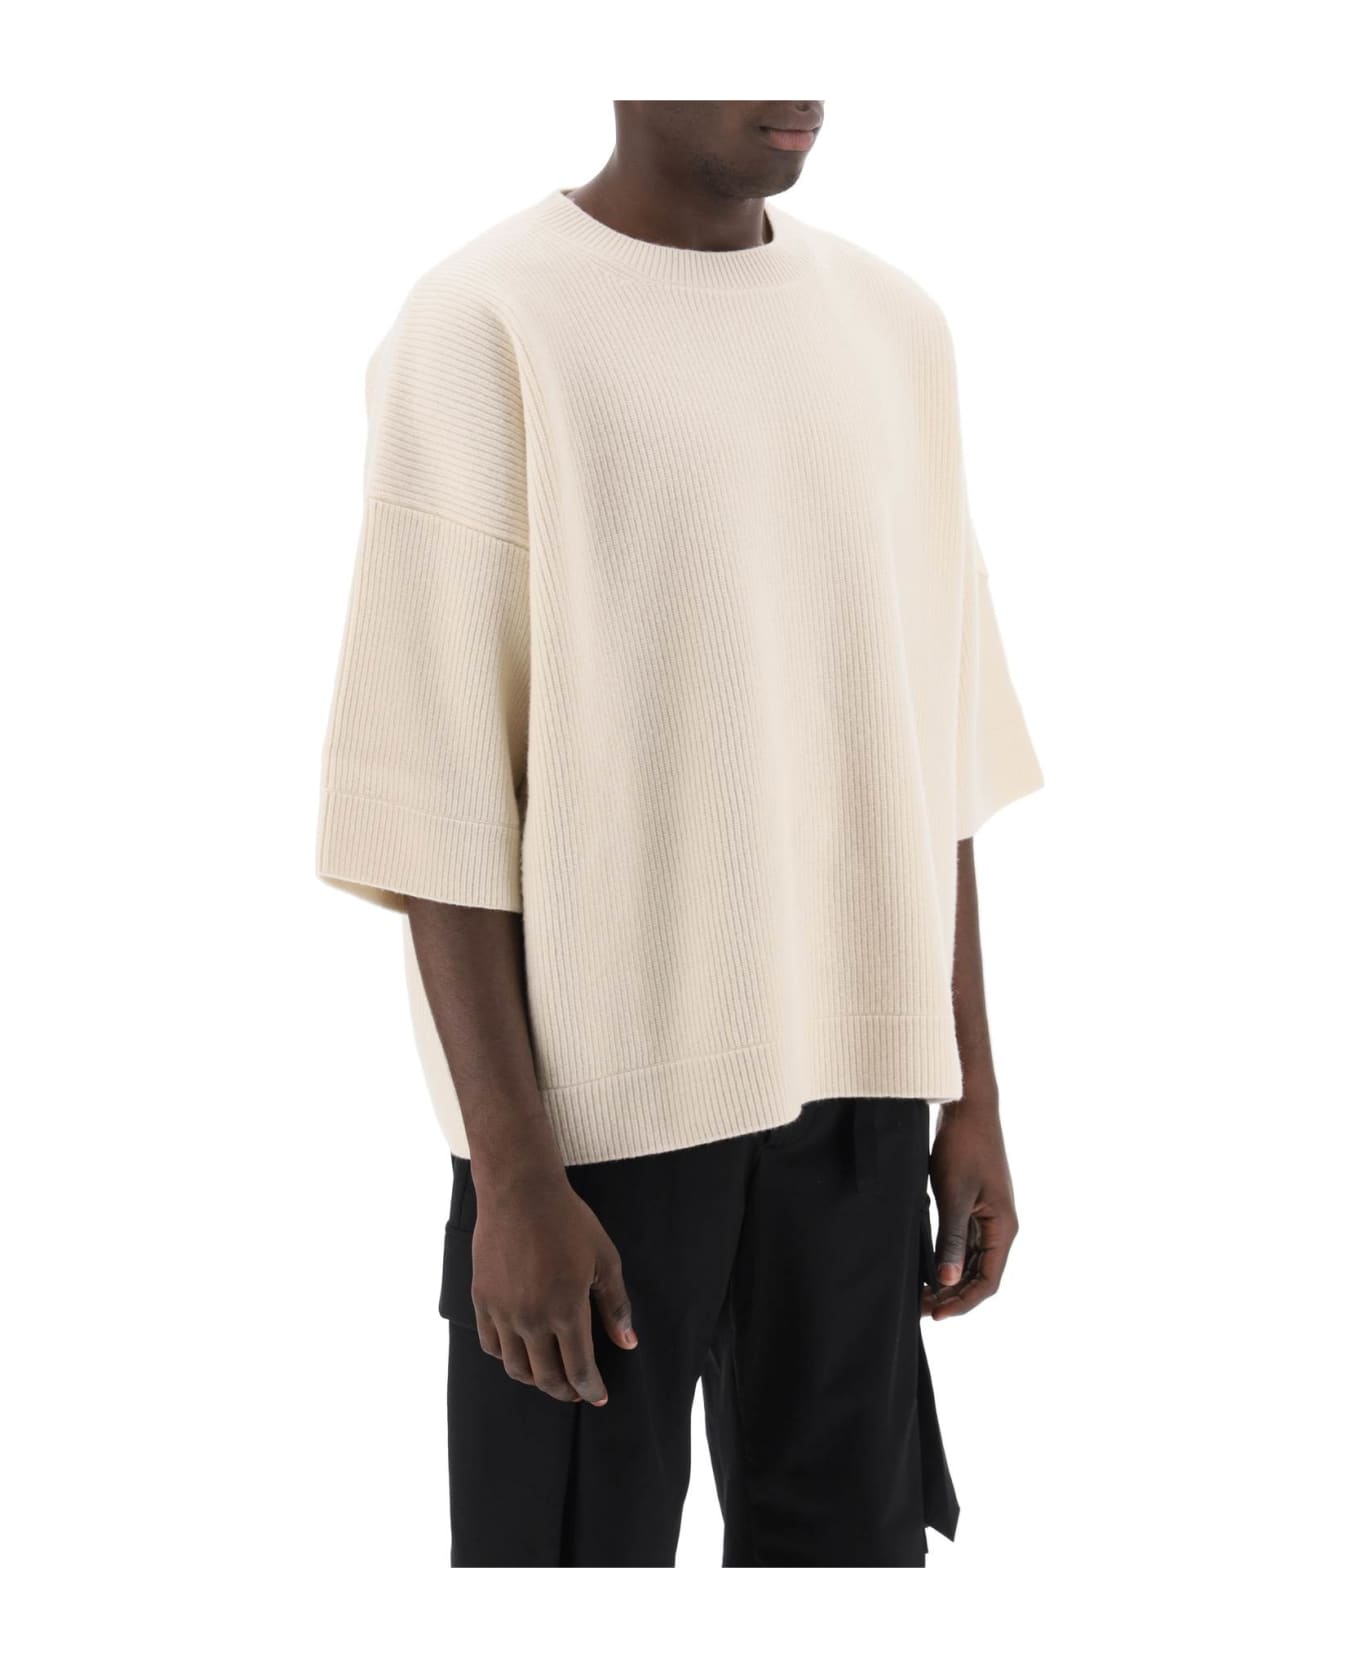 Moncler Genius Short-sleeved Wool Sweater - White ニットウェア